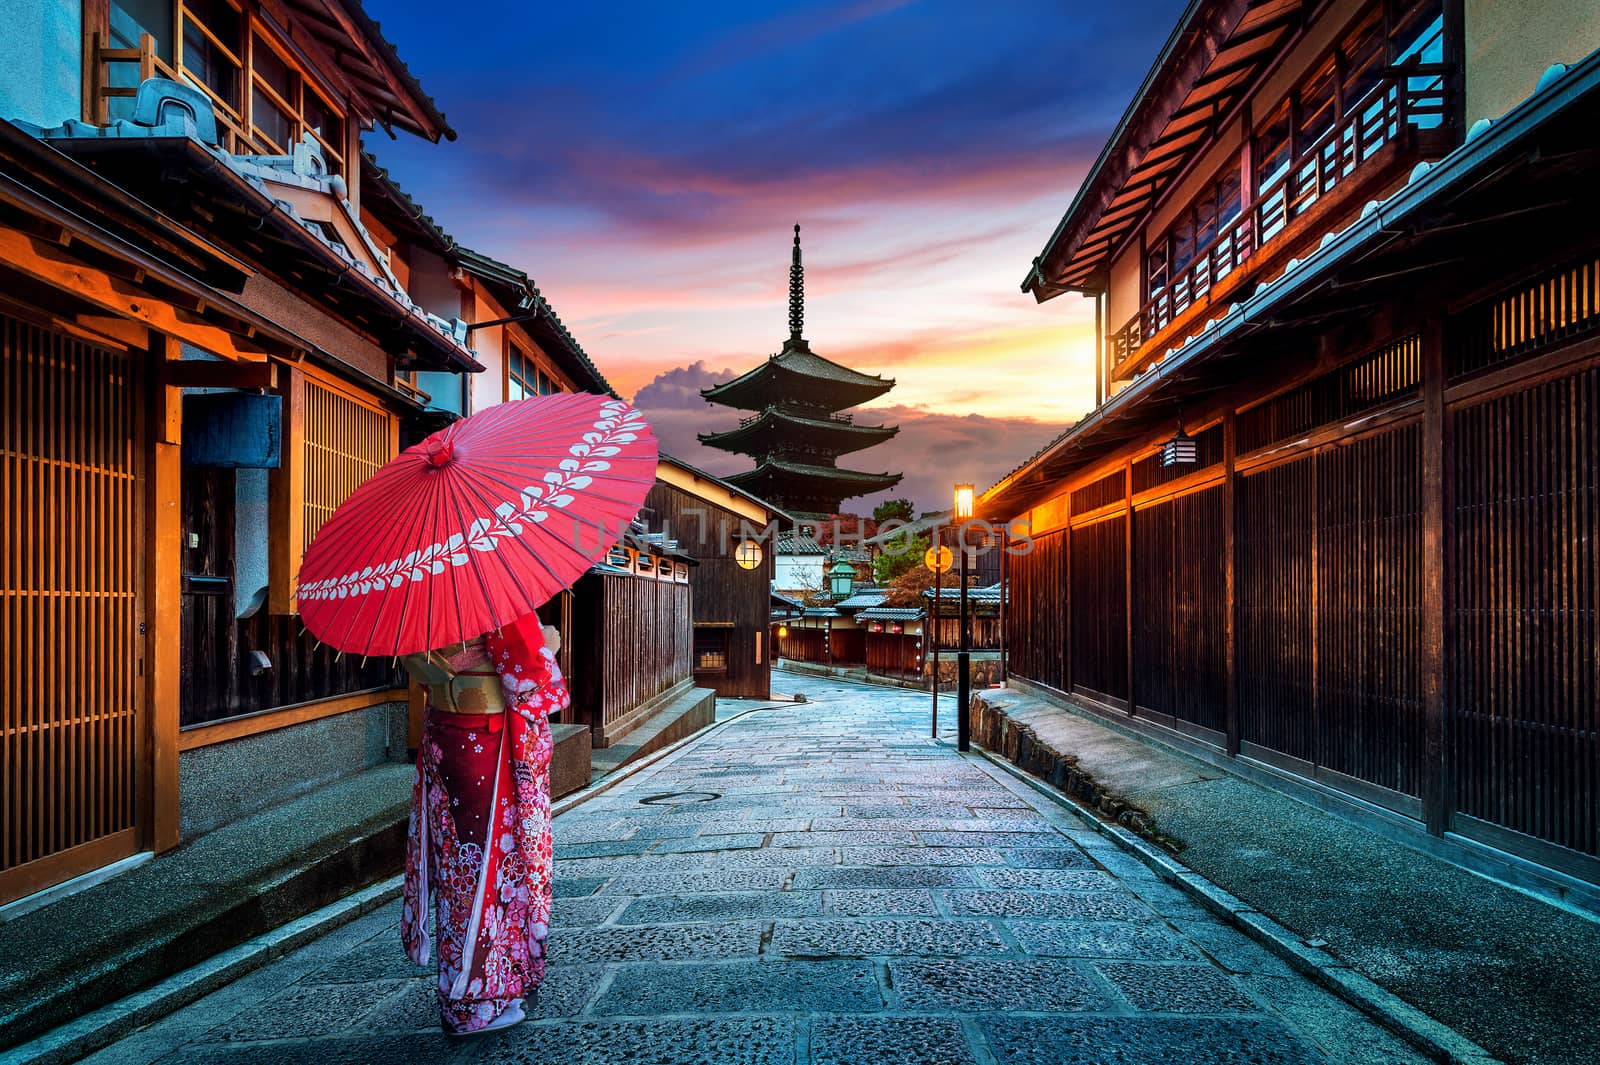 Asian woman wearing japanese traditional kimono at Yasaka Pagoda and Sannen Zaka Street in Kyoto, Japan. by gutarphotoghaphy